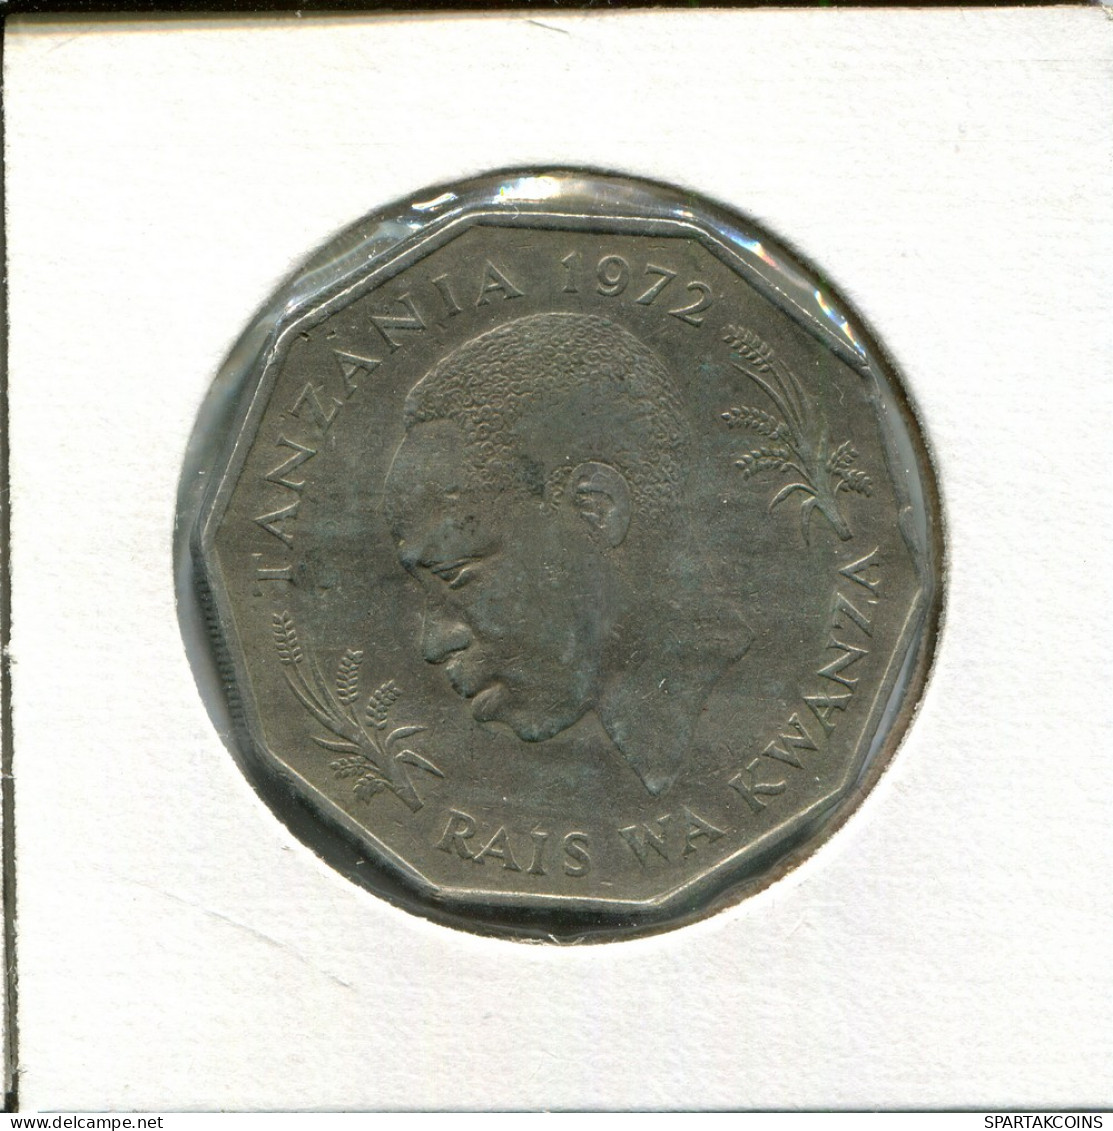 5 SHILLINGI 1972 TANZANIA Coin #AT980.U - Tansania